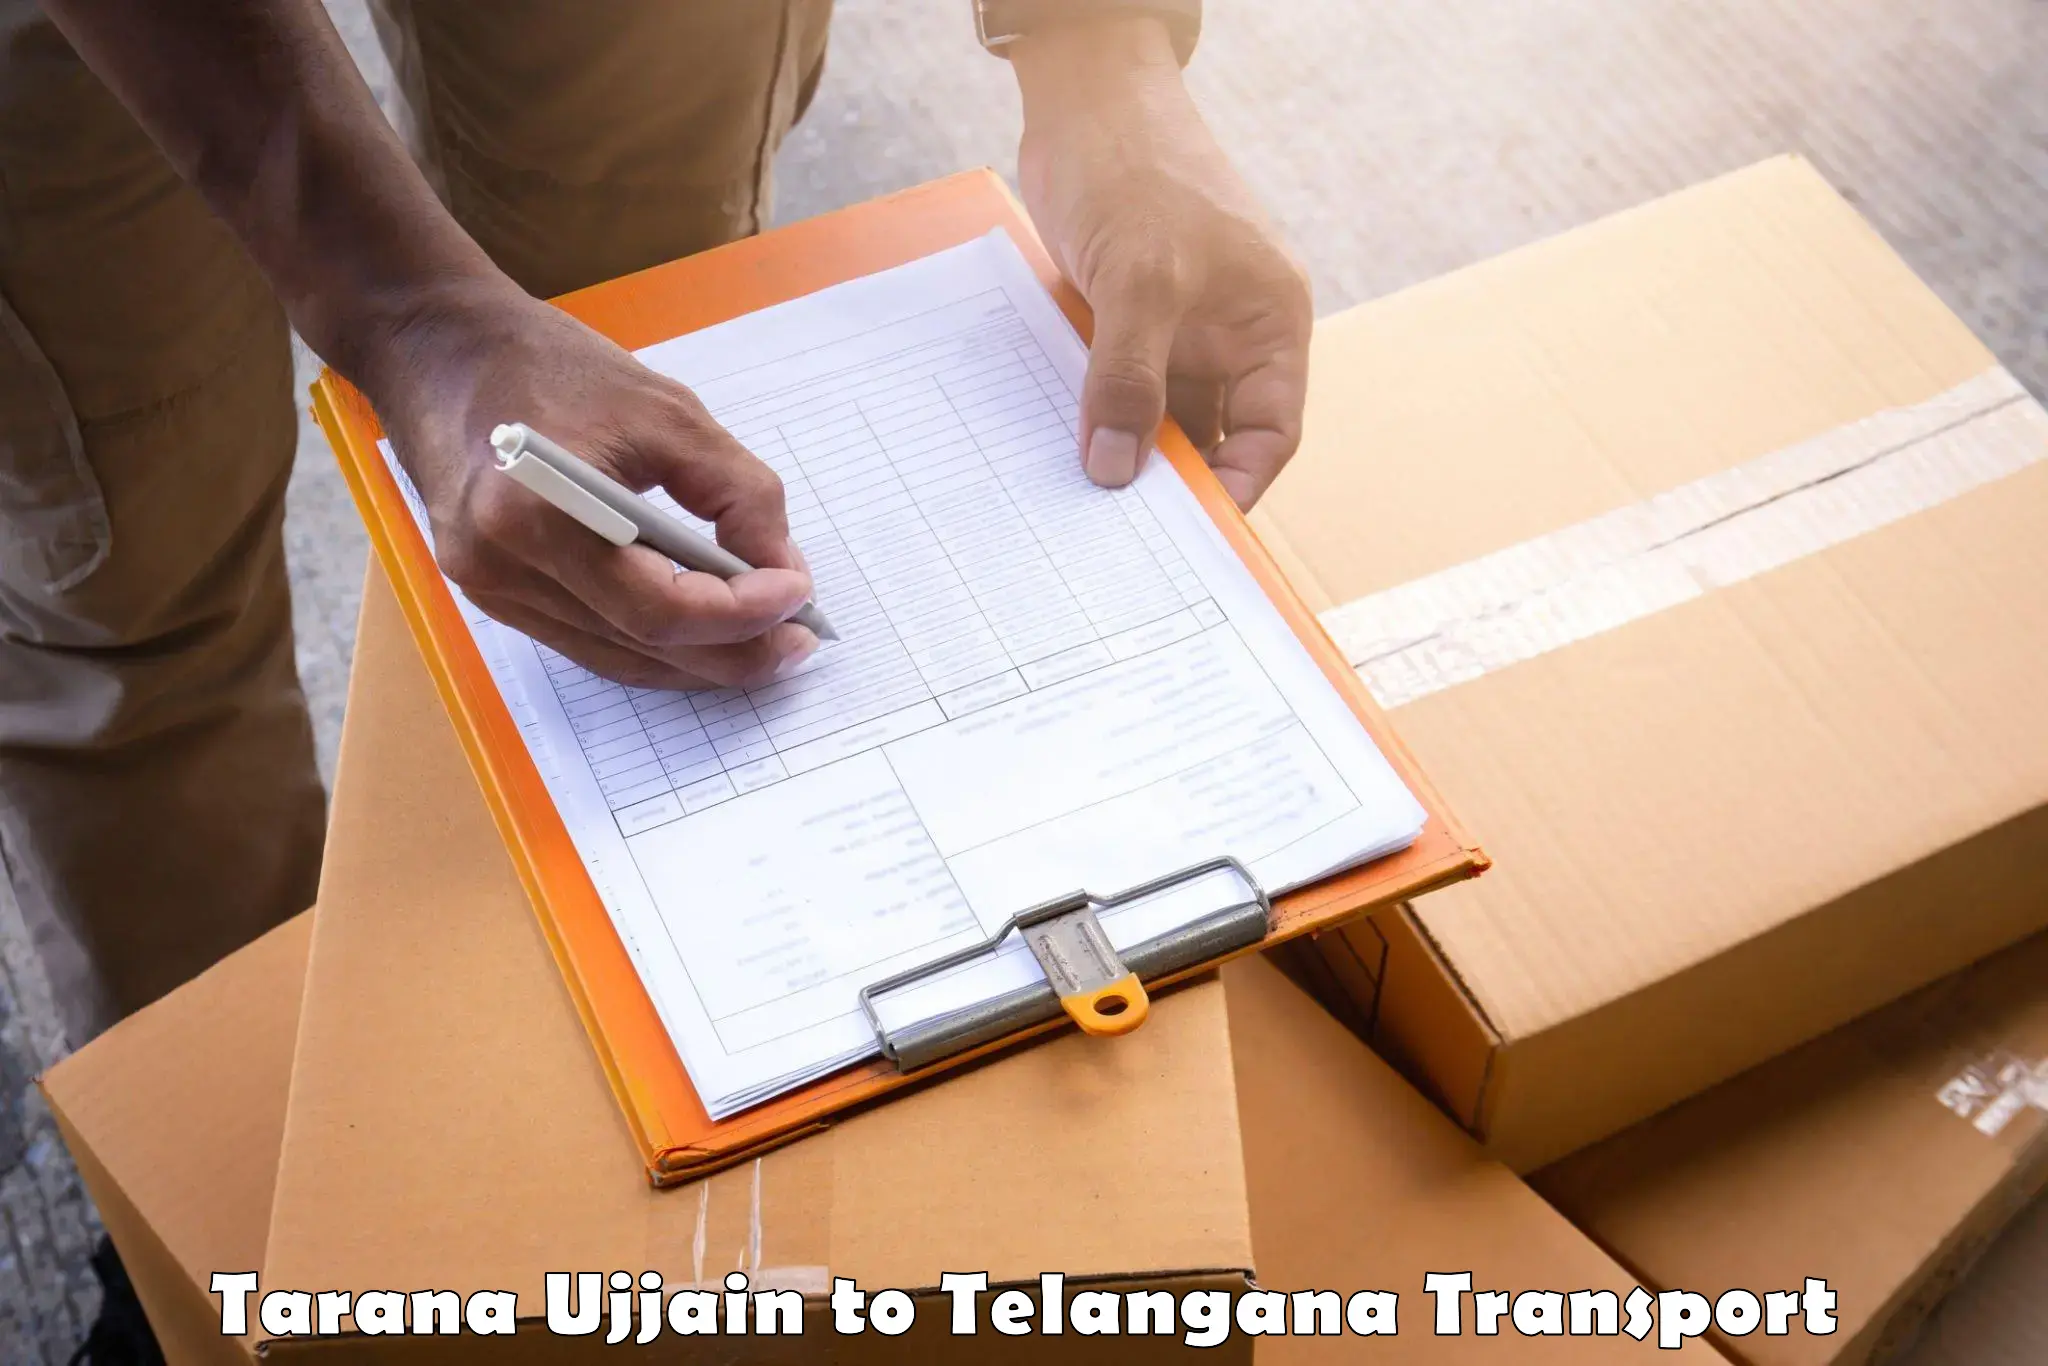 Daily transport service Tarana Ujjain to Kosgi